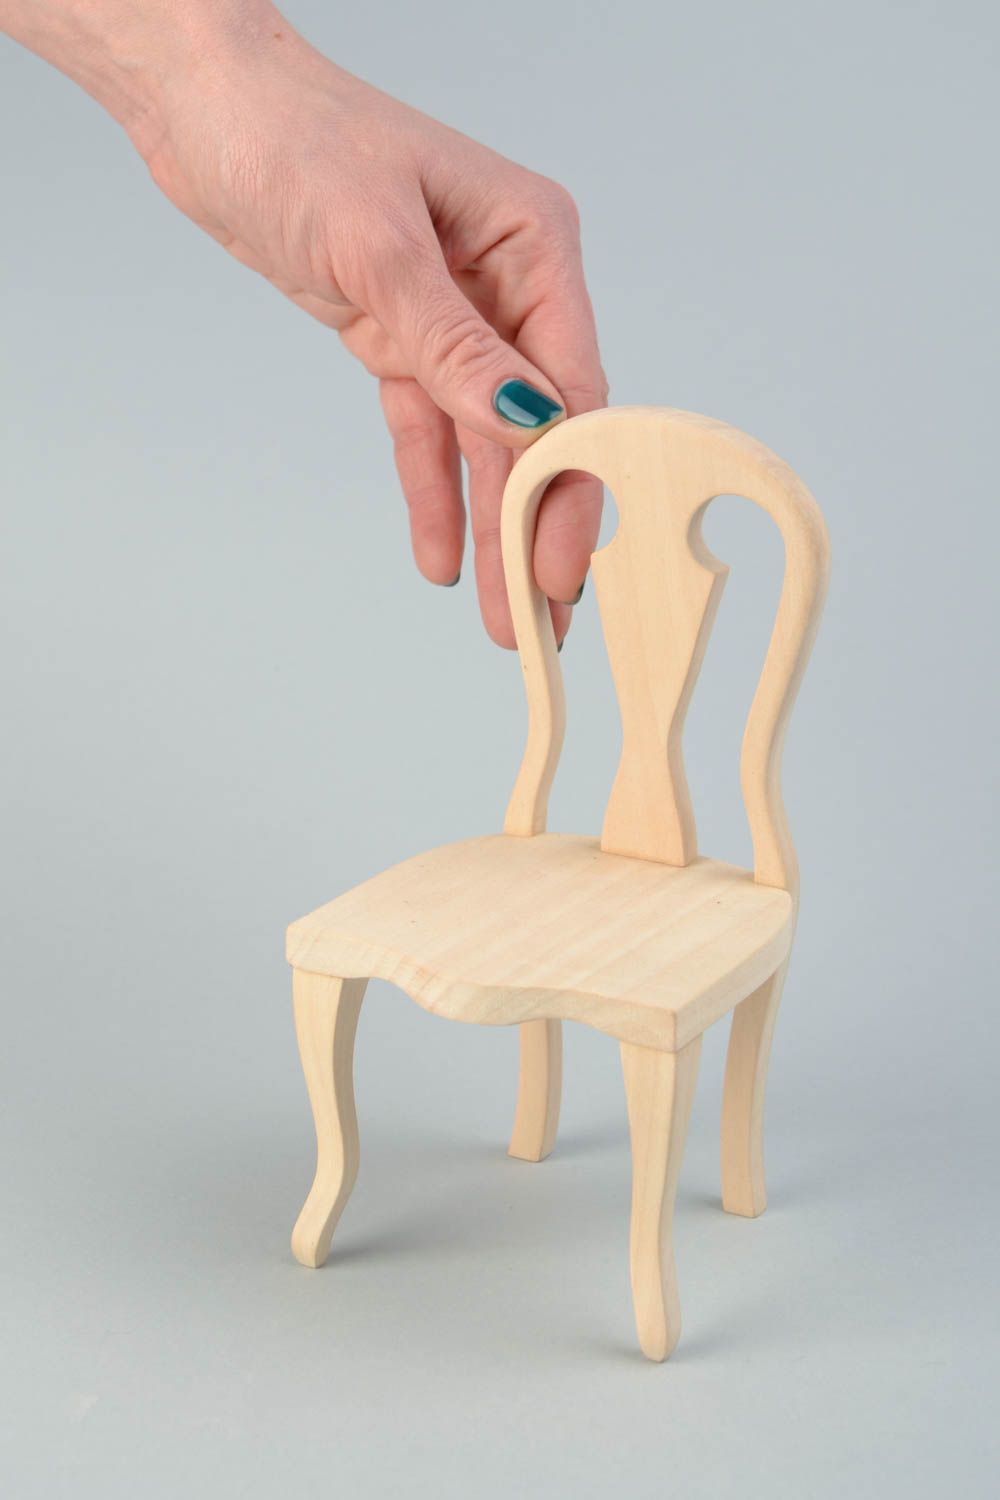 Chaise pour poupée en bois faite main ébauche pour serviettage ou peinture photo 2